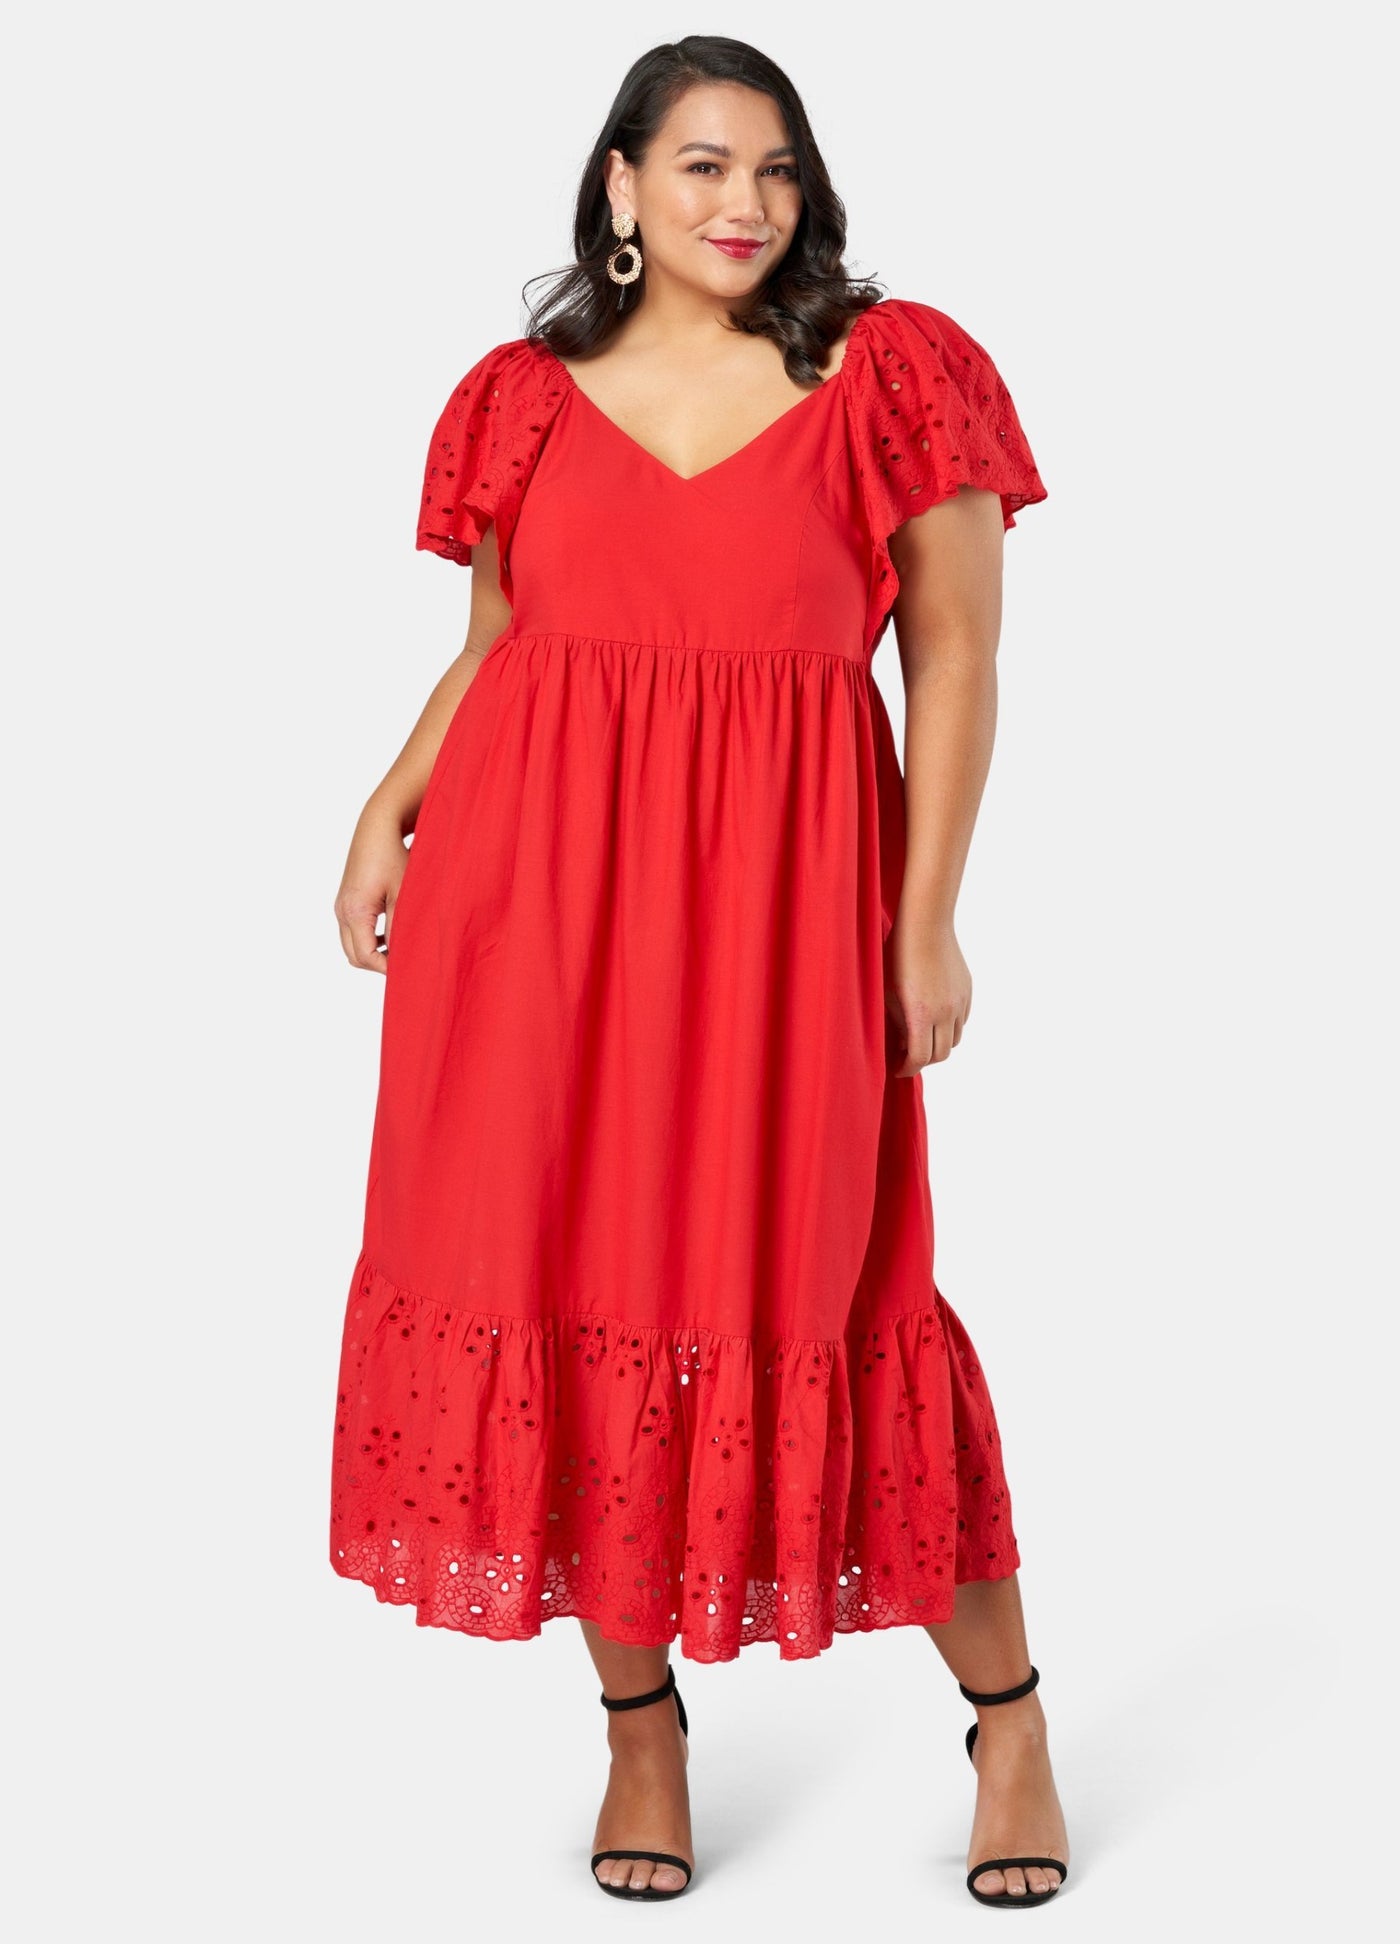 Model wearing red dress